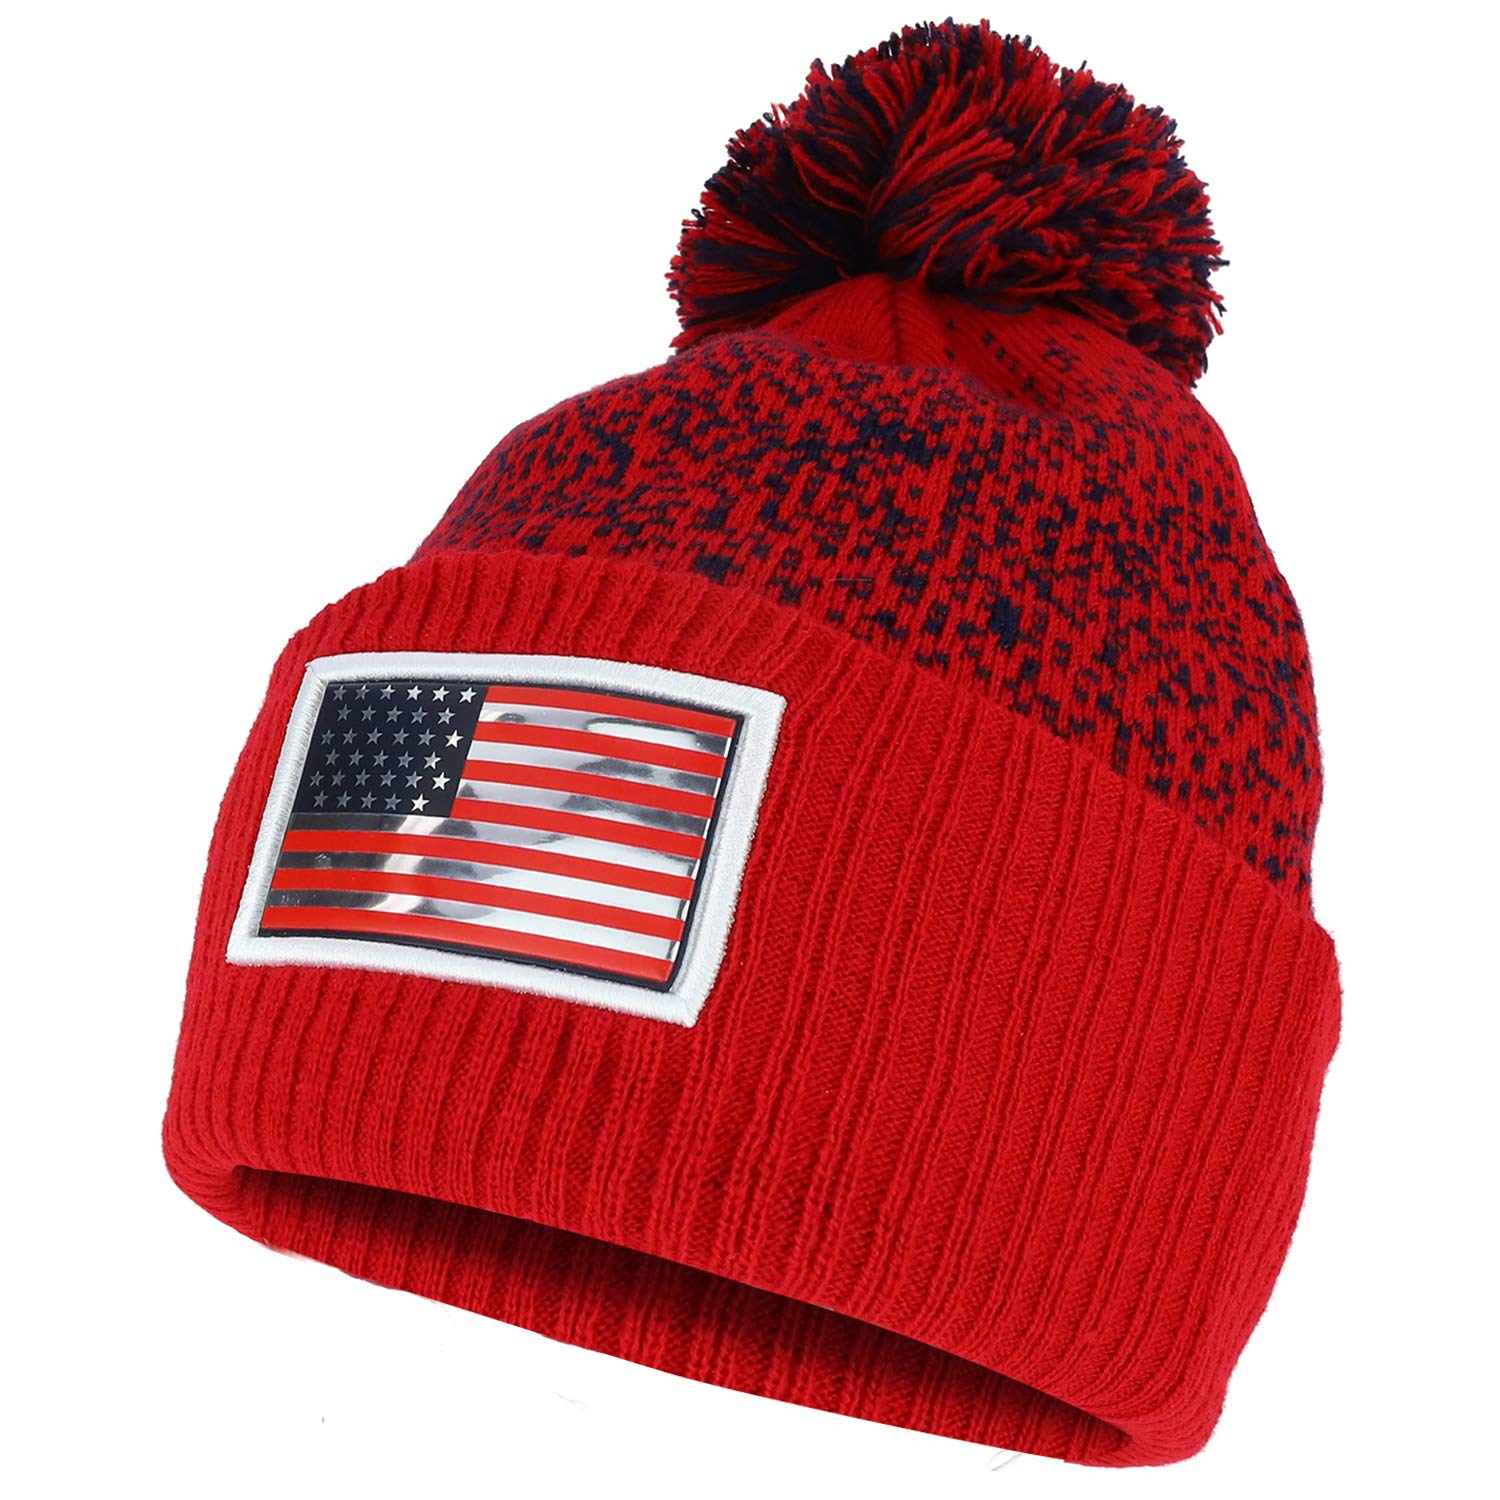 USA Pom Pom Stylish Acrylic Cuff Winter Beanie Hat